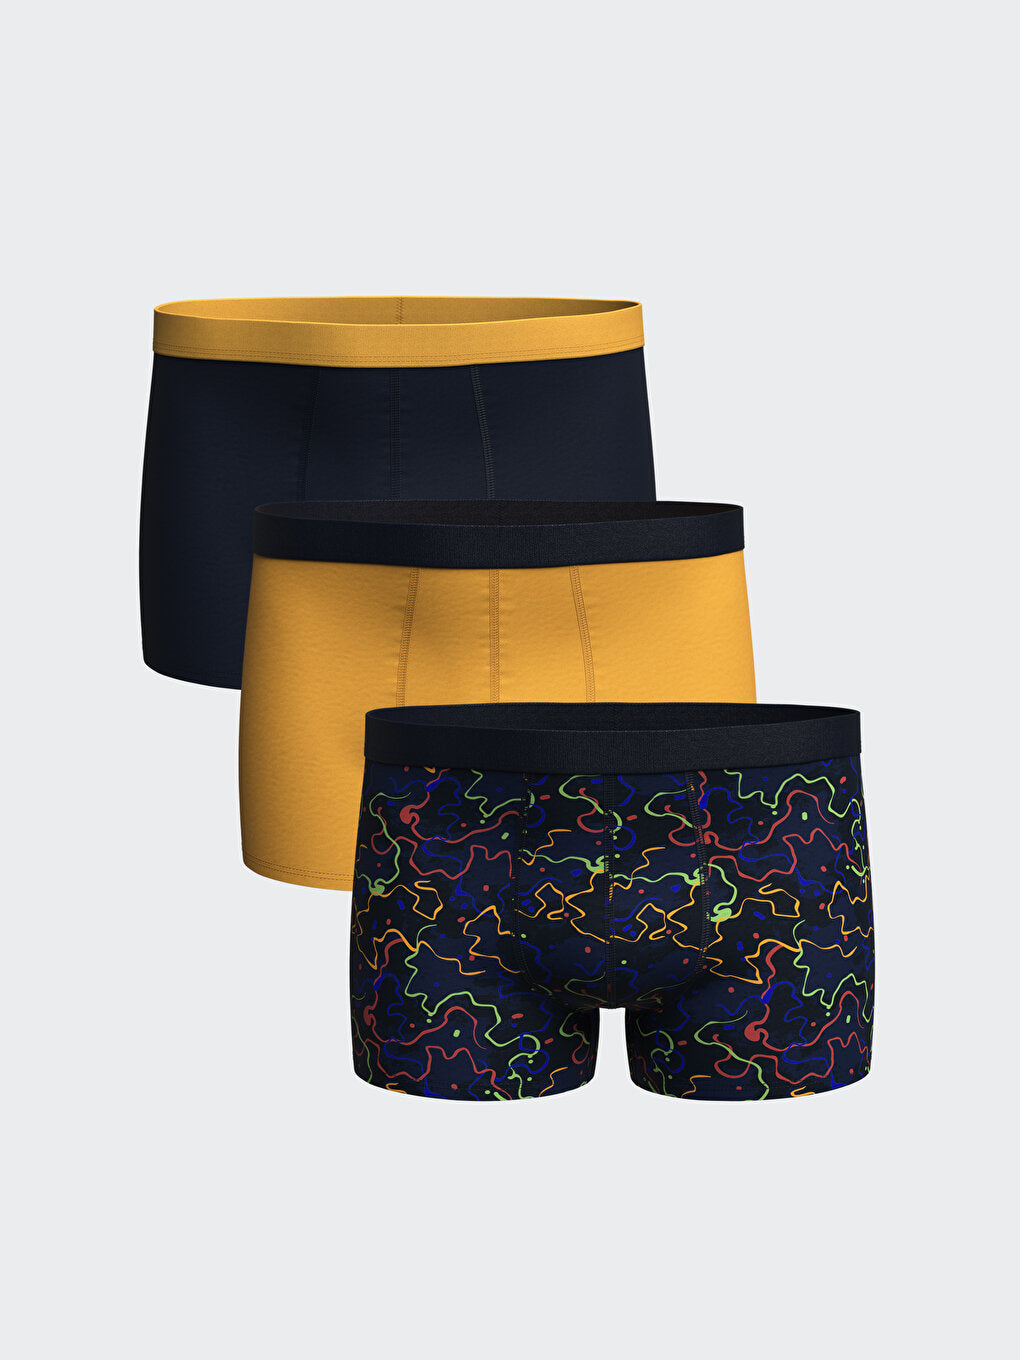 Standard Mold Flexible Fabric Men Boxer 3-Piece